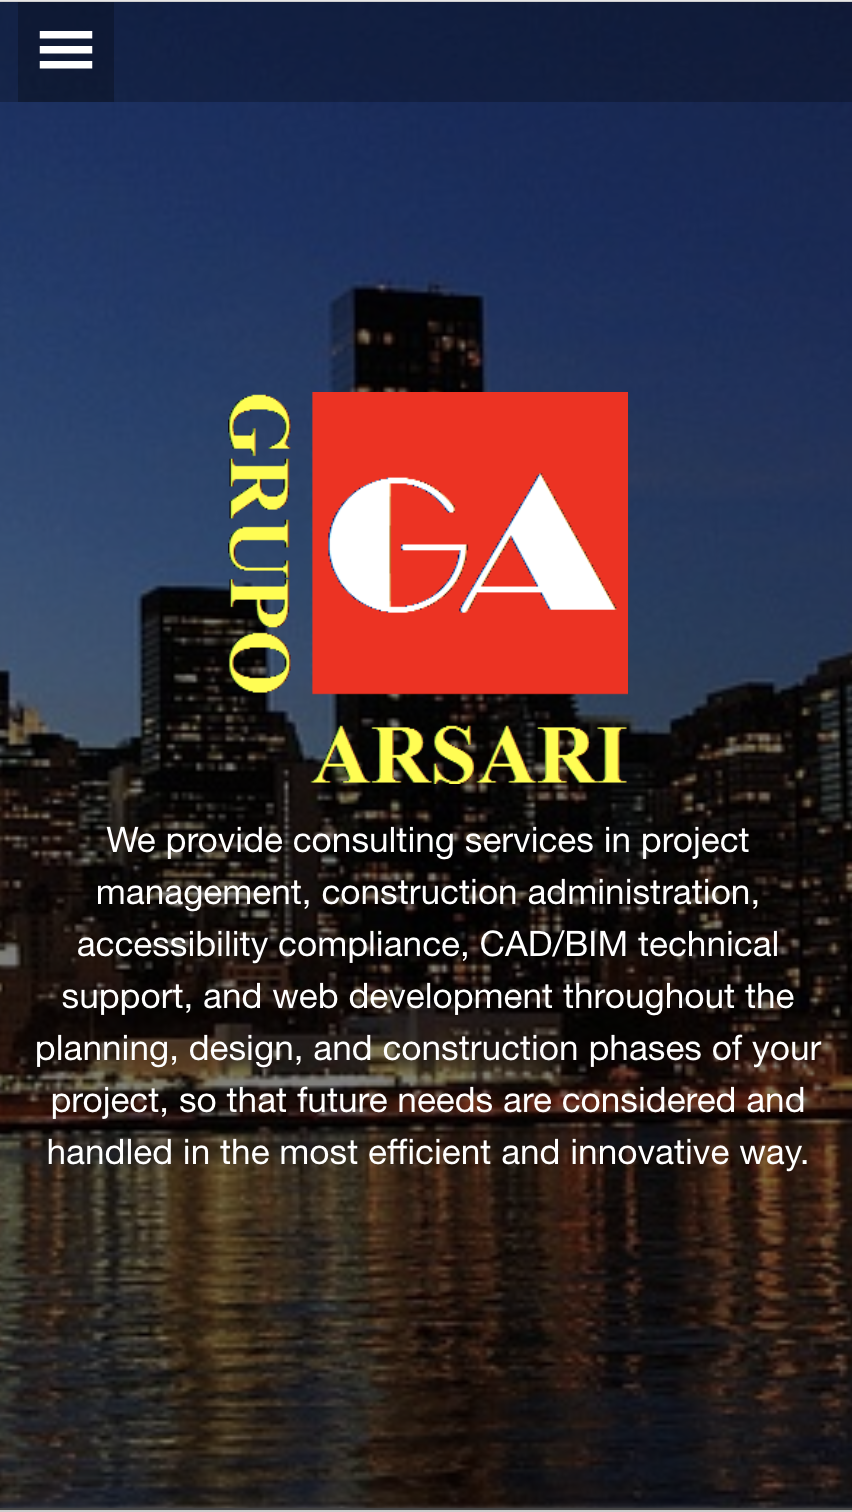 Grupo Arsari